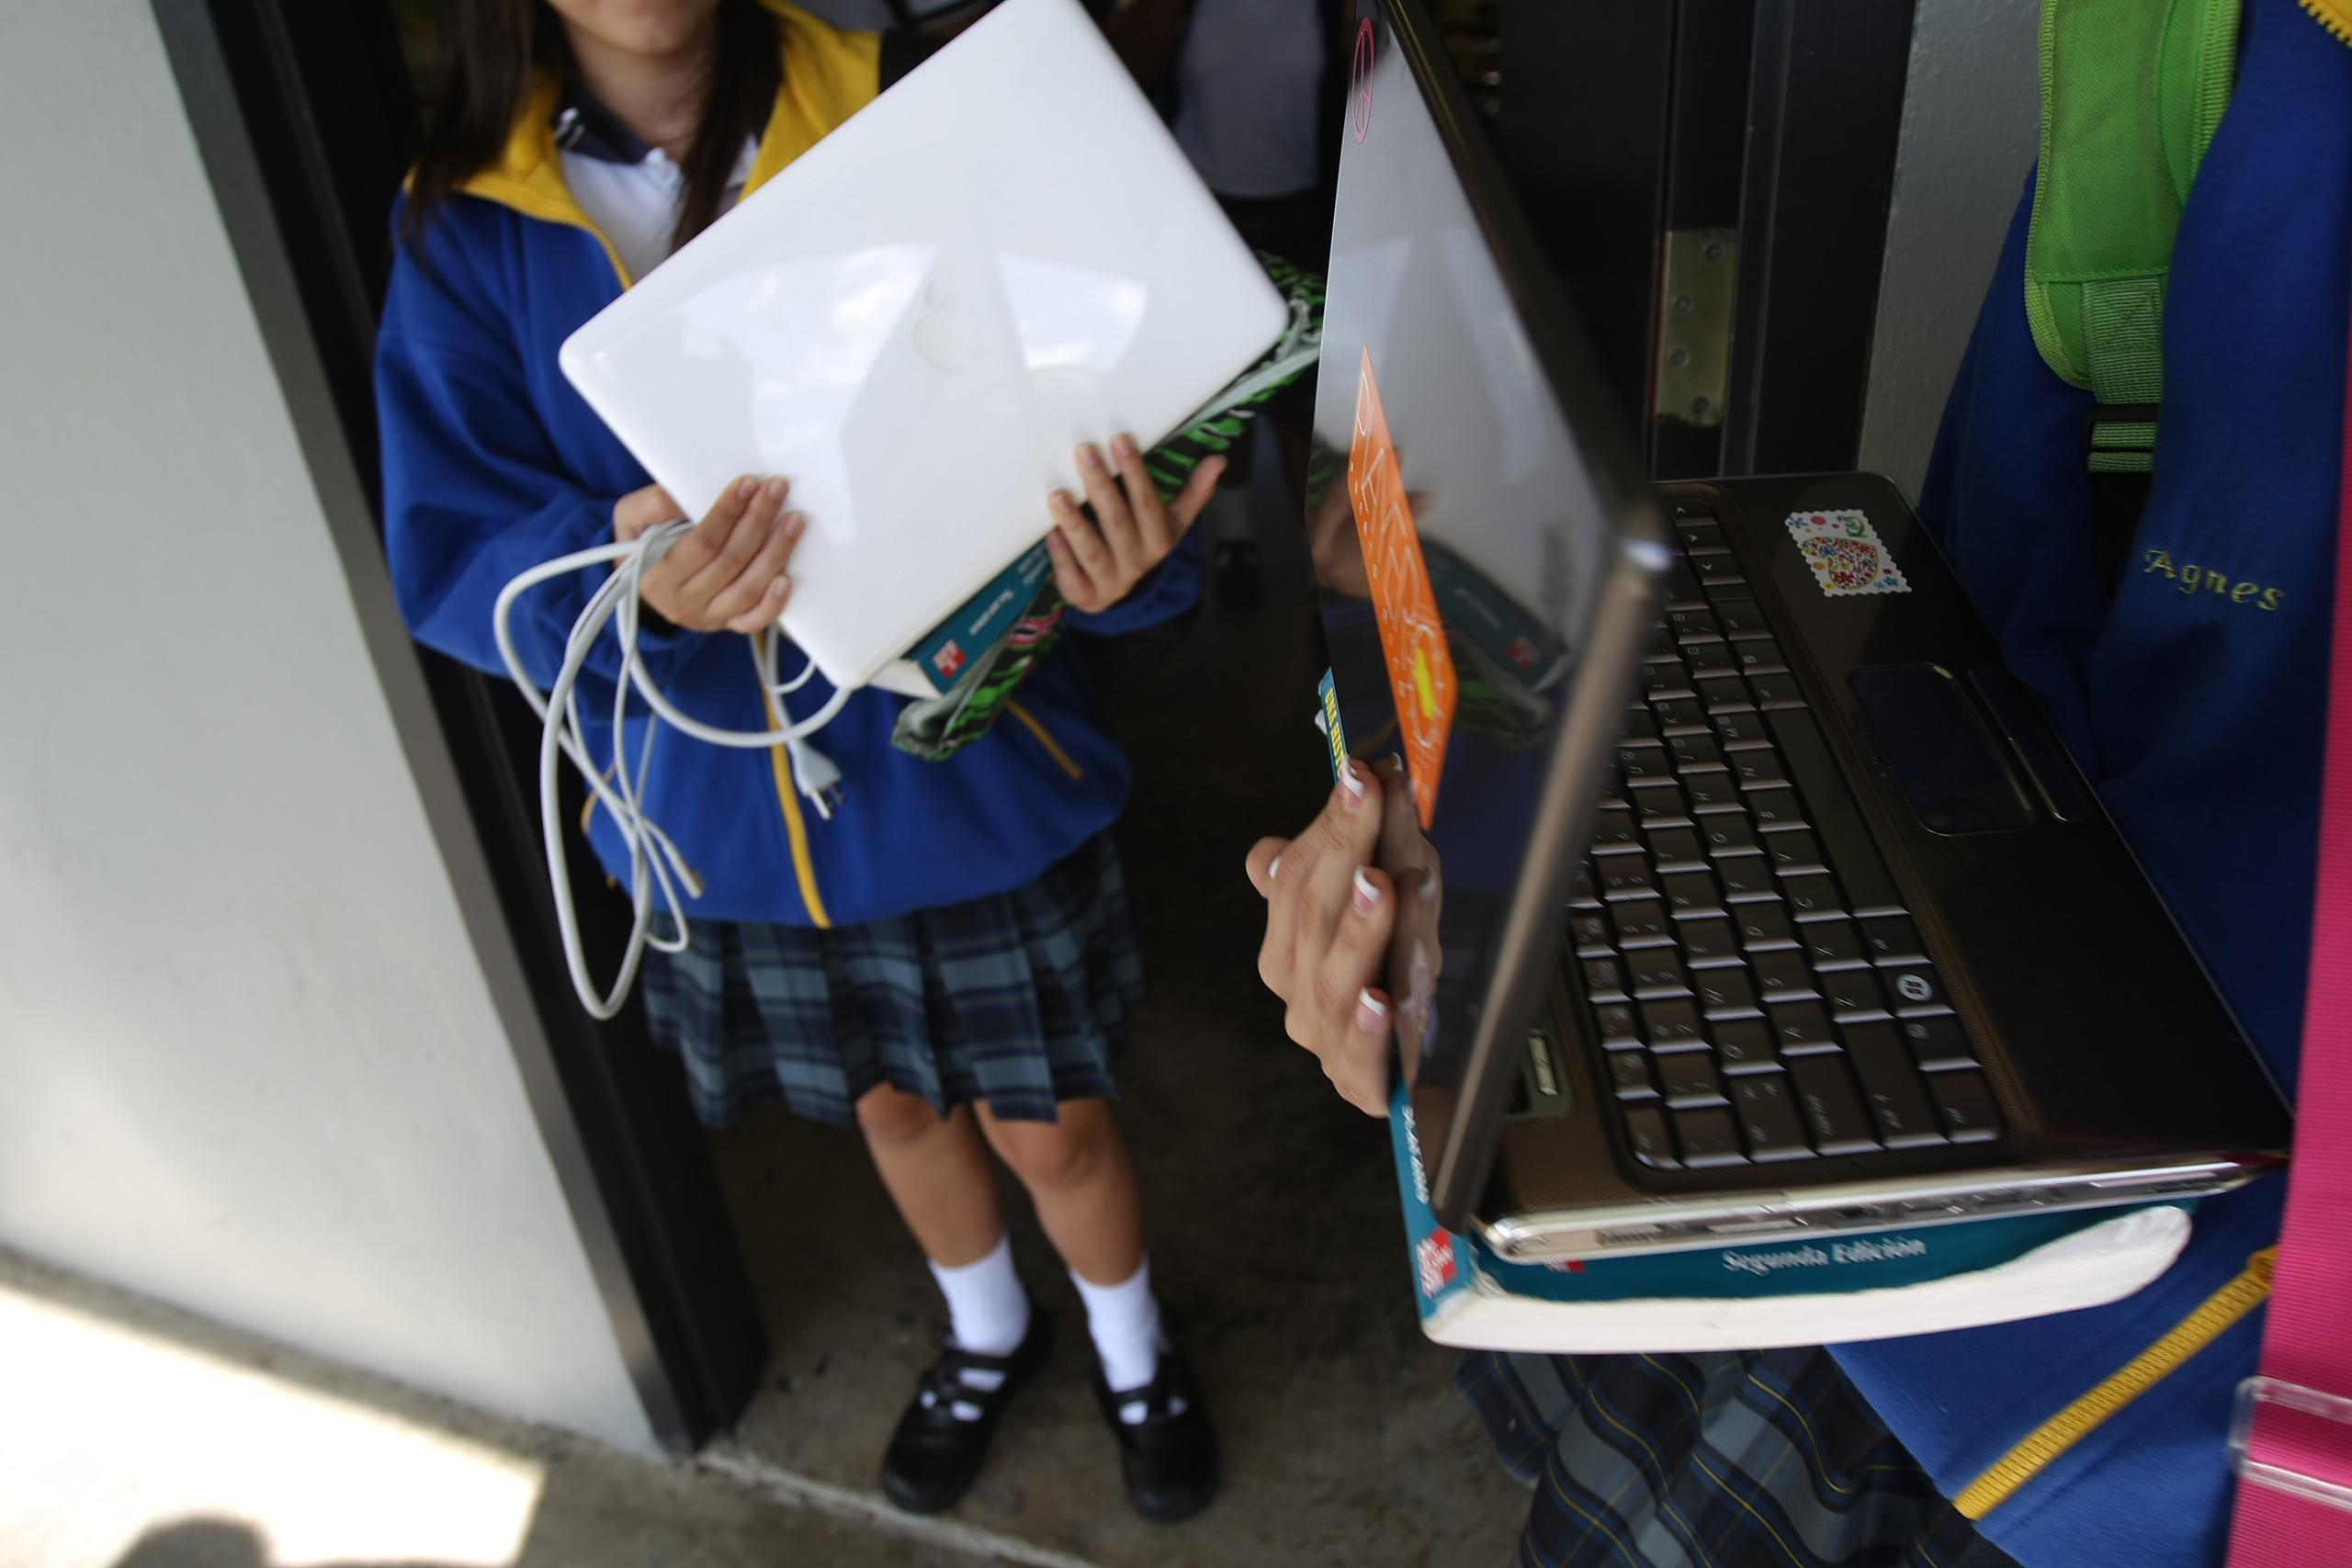 En Juncos, Canóvanas, Guaynabo, Carolina y Gurabo más del 86% de los menores tuvieron computadora o acceso al internet, indica el informe.